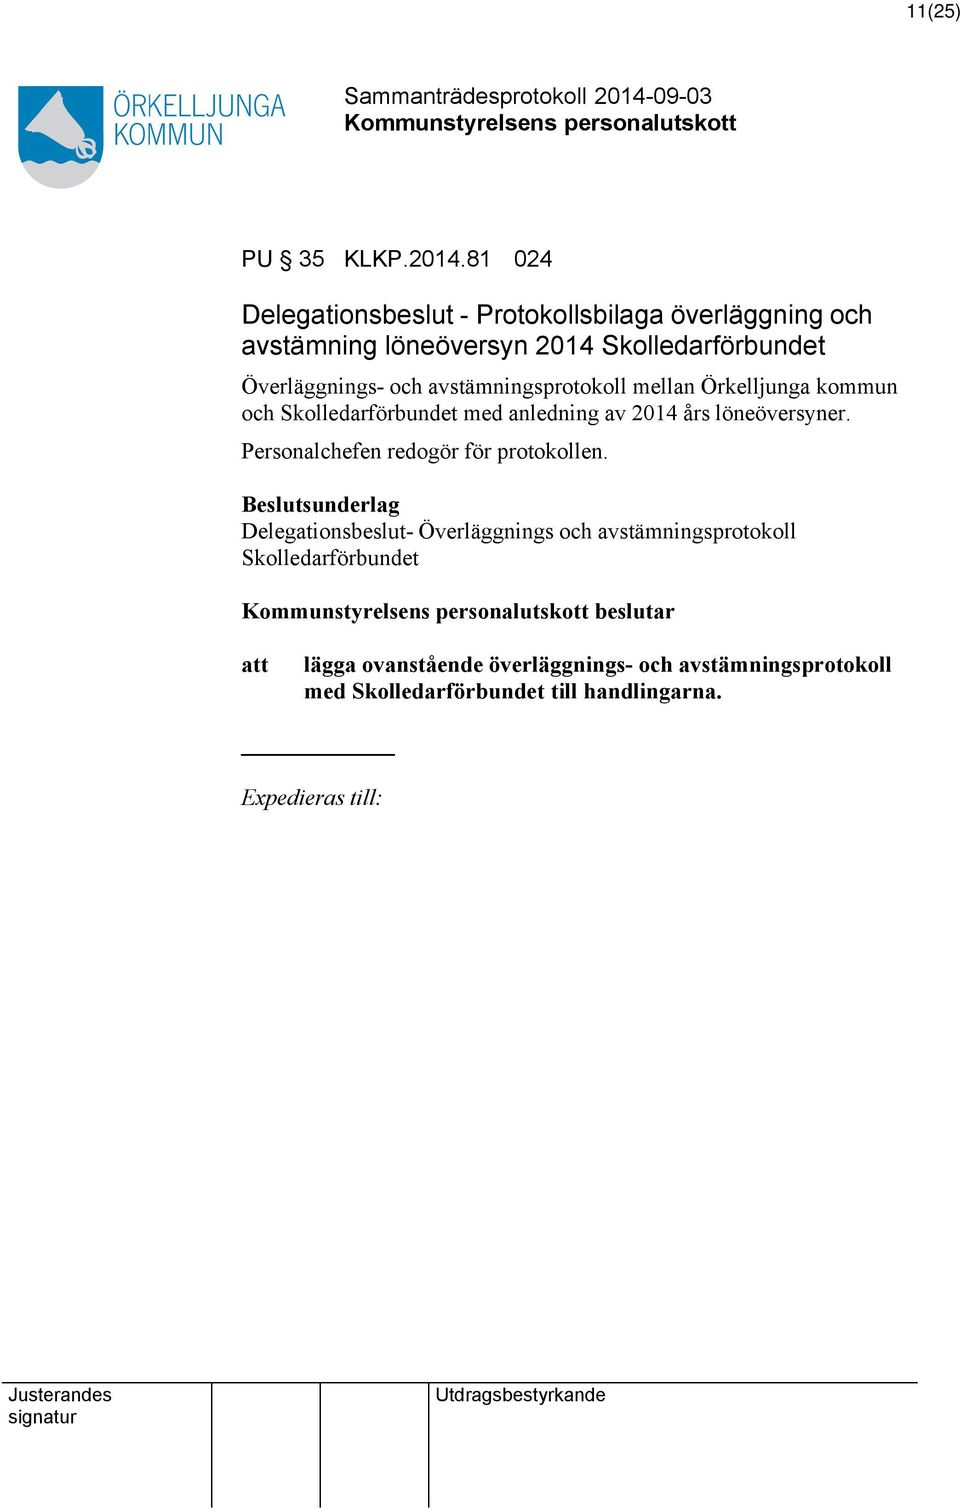 Överläggnings- och avstämningsprotokoll mellan Örkelljunga kommun och Skolledarförbundet med anledning av 2014 års